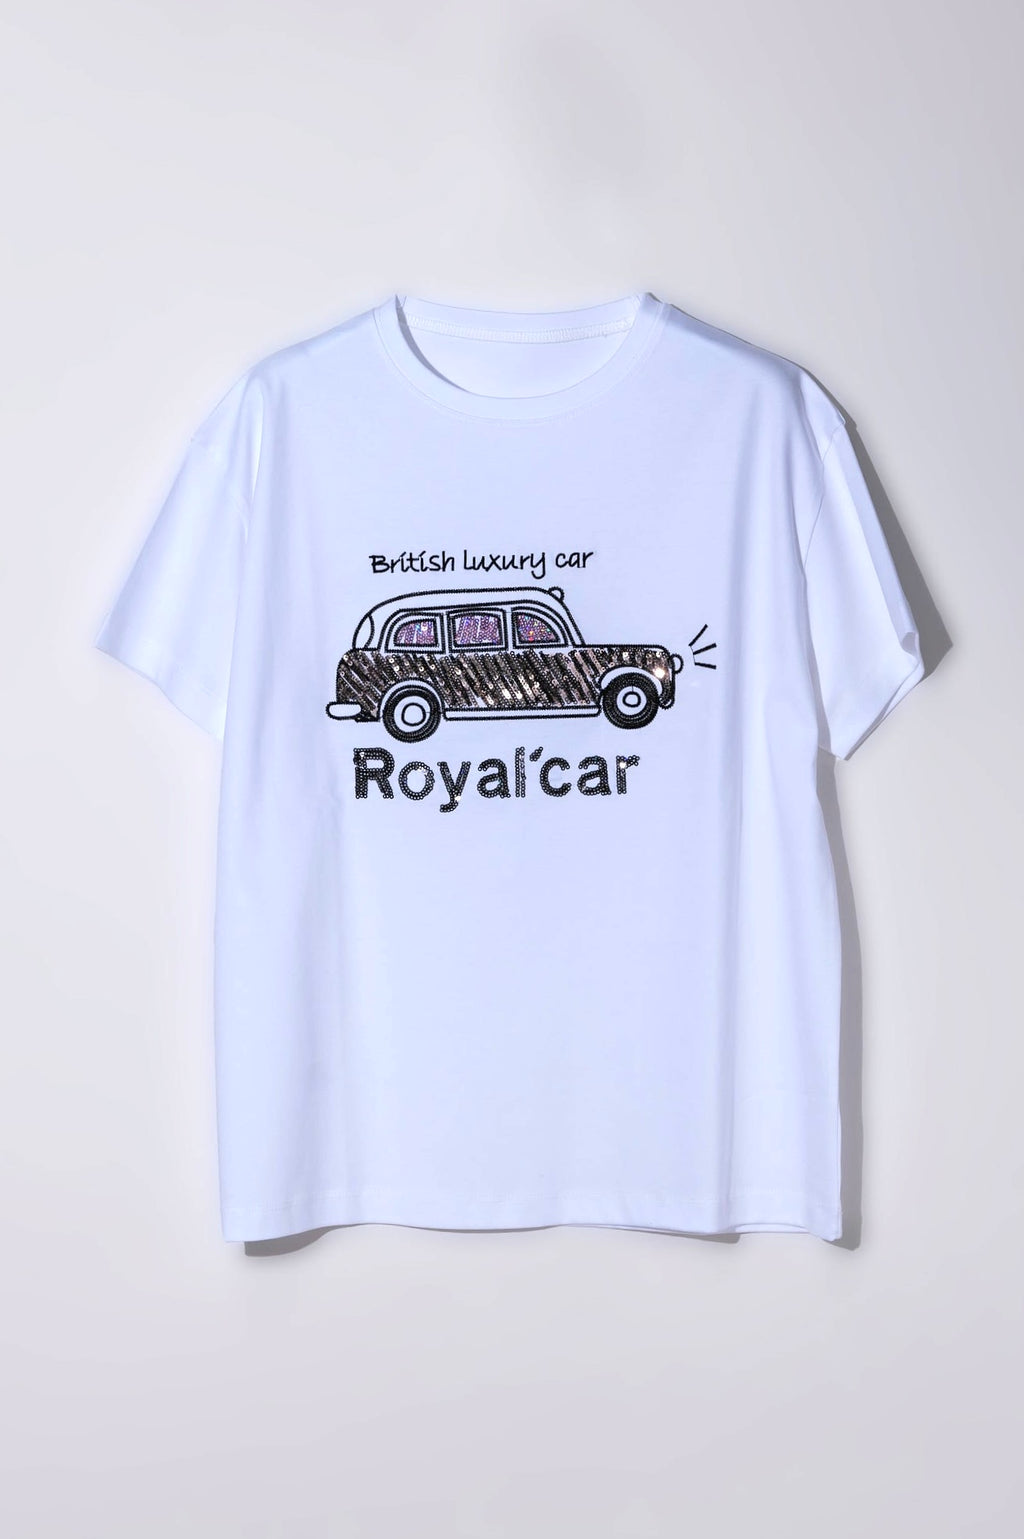 【24SS 商品】Royal car Tシャツ